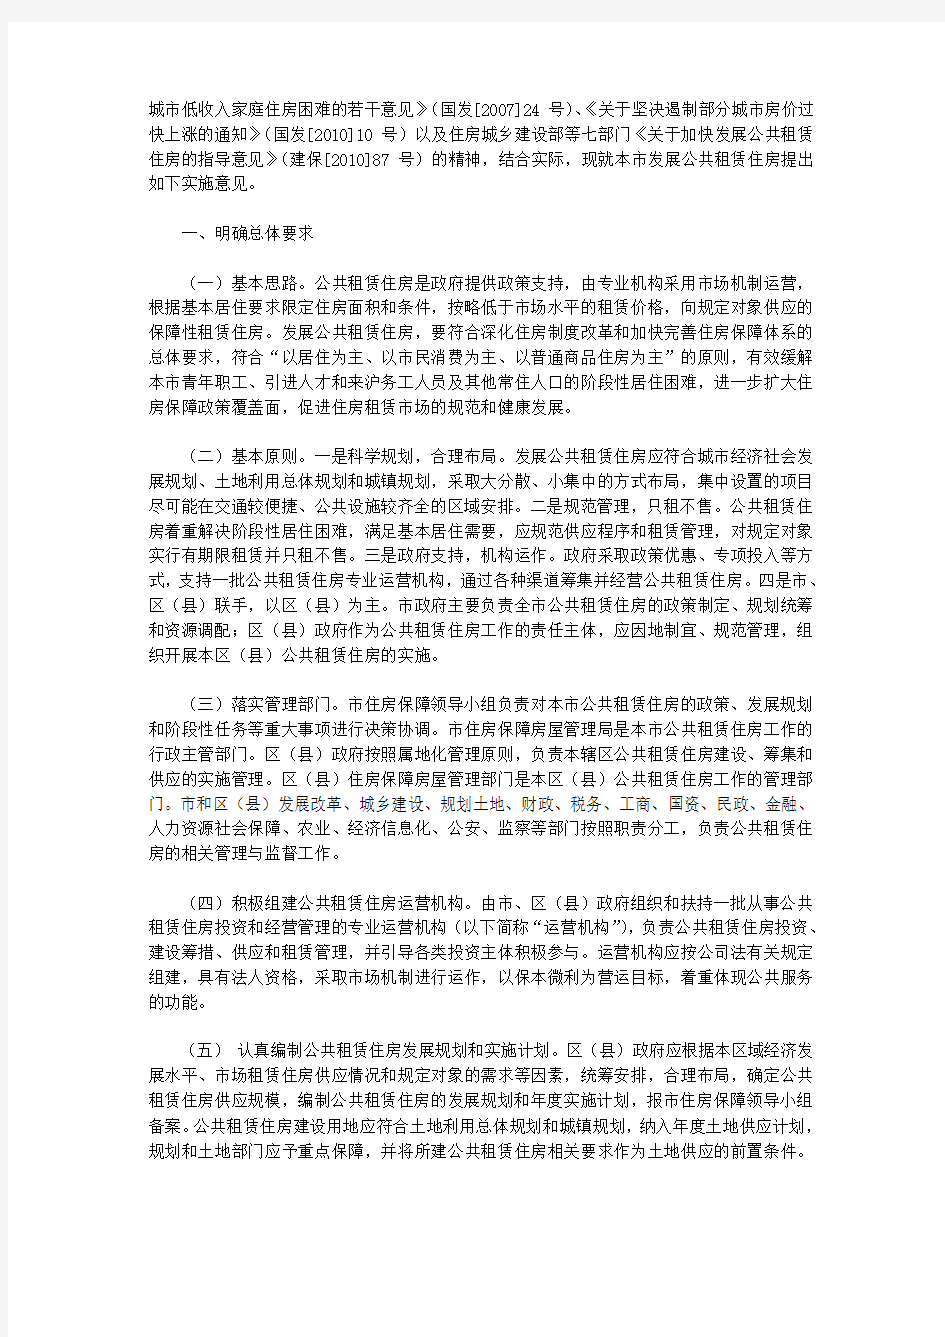 上海市人民政府关于批转上海市住房保障和房屋管理局等部门制订的《